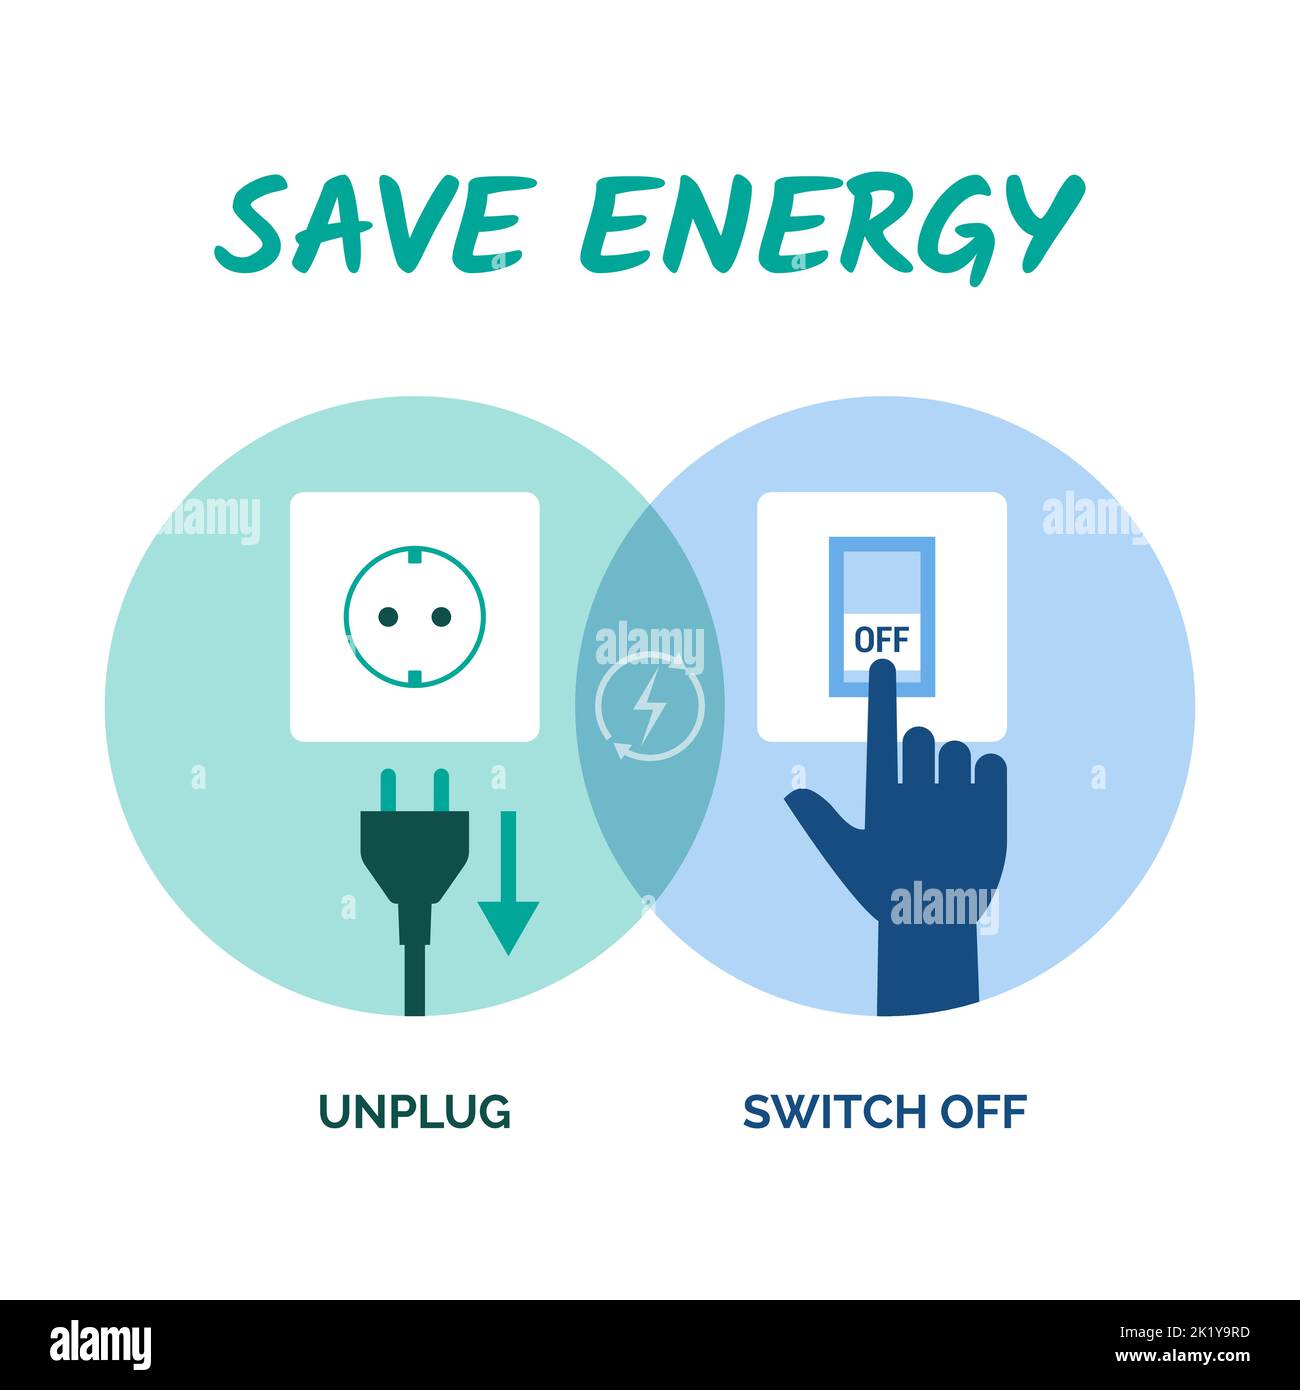 Conseils pour économiser de l'énergie : débranchez les appareils lorsqu'ils ne sont pas utilisés et éteignez les lumières Illustration de Vecteur